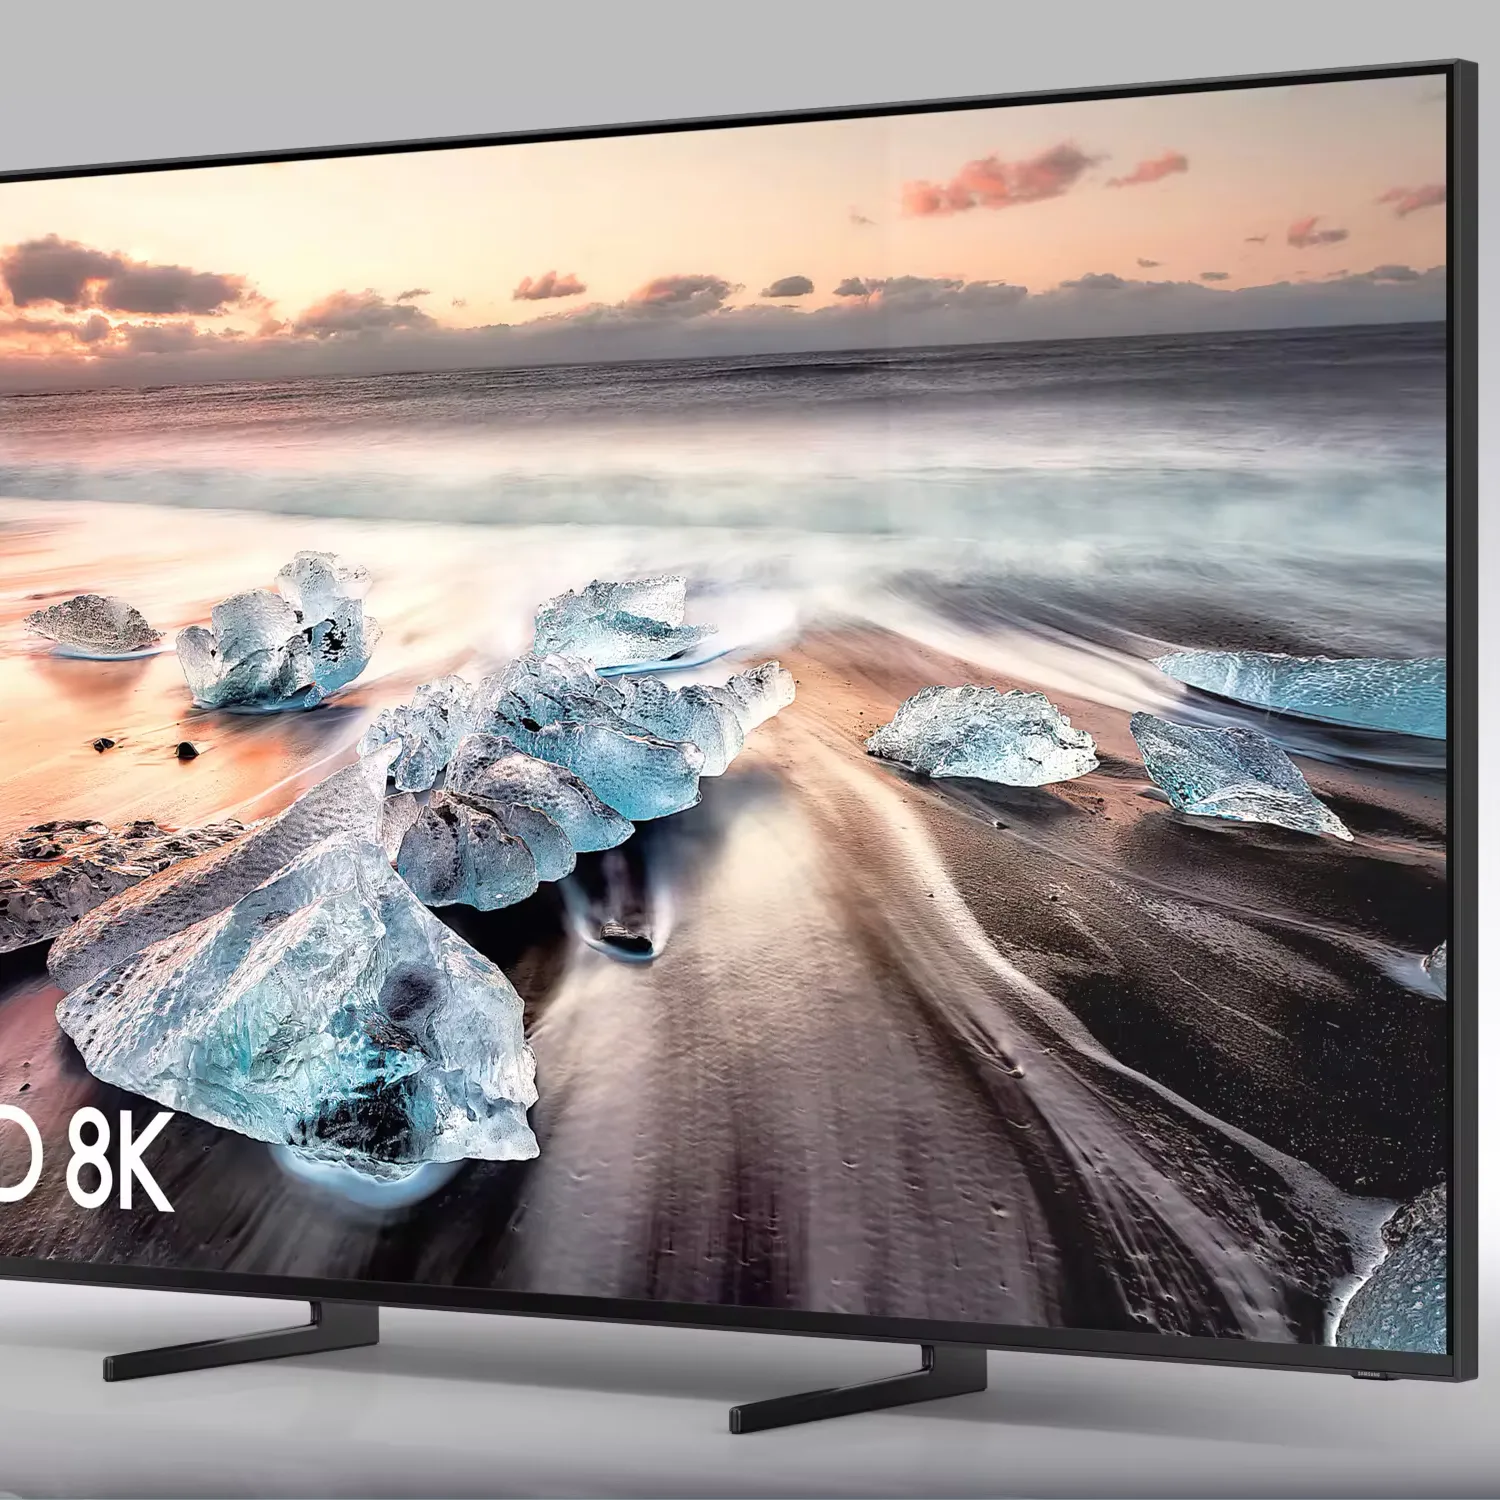 Meilleures ventes sur UE49MU6400 Smart TV LED 49 "4K Ultra HD HDR avec Freeview HD/Freesat Nouveau